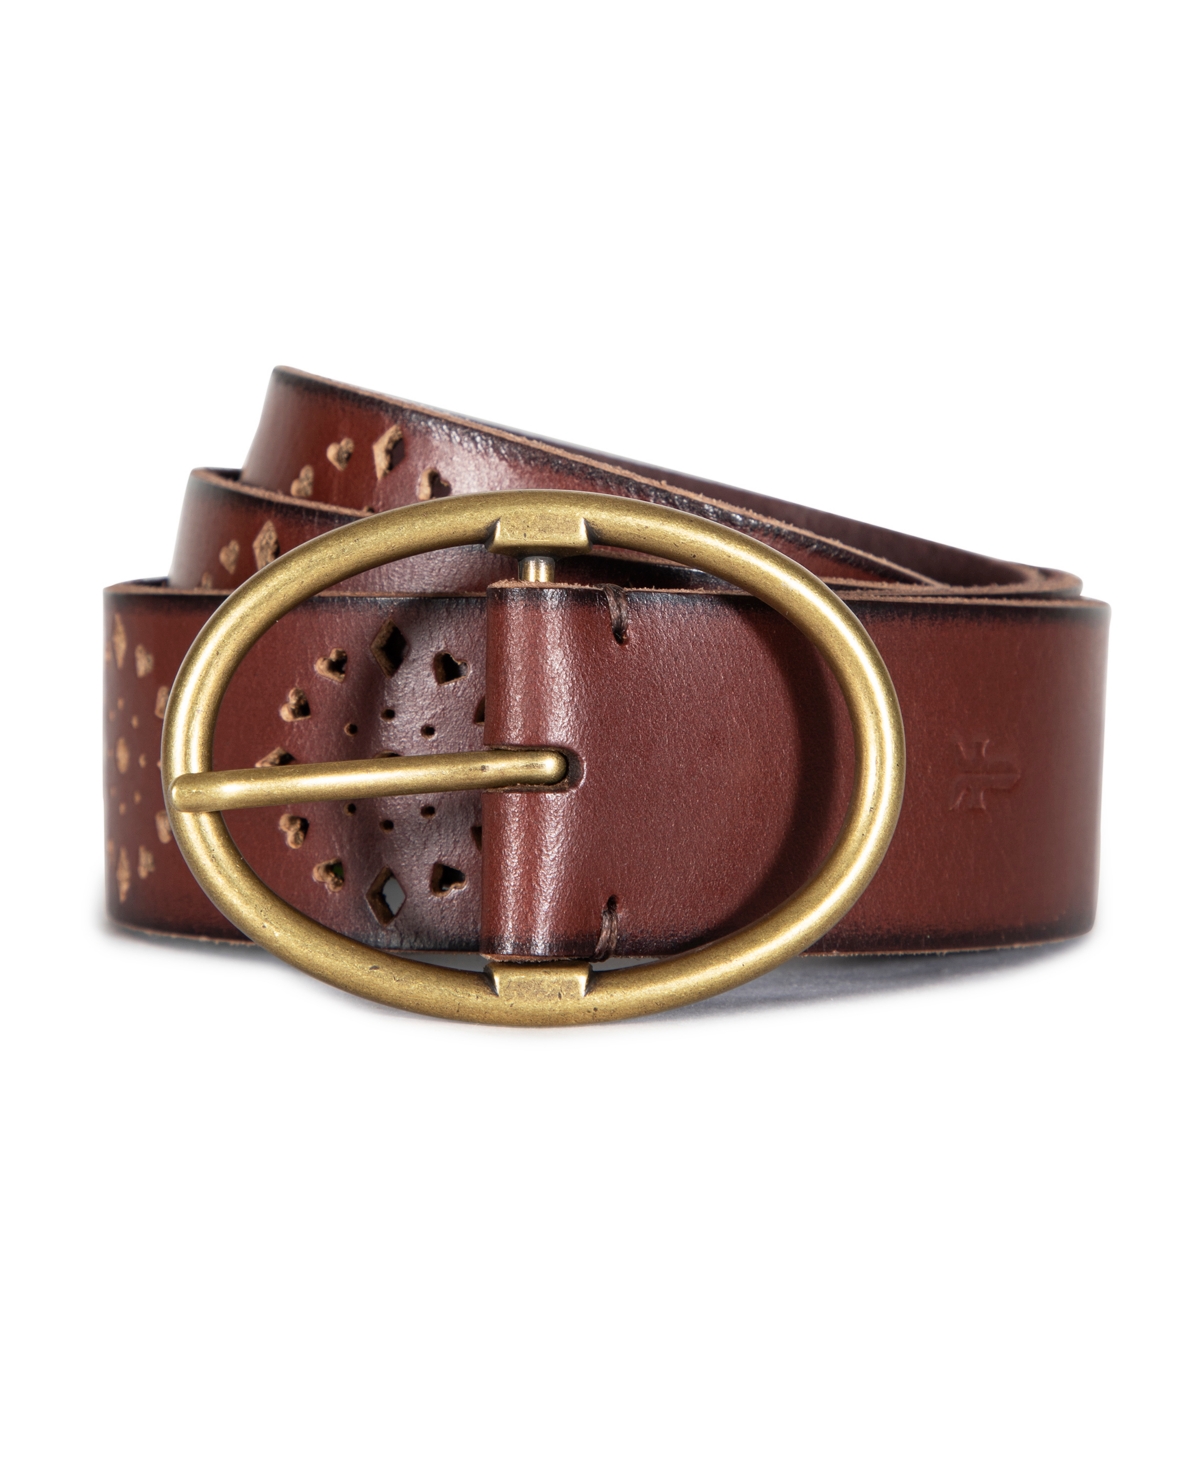 Frye Women's Leather Belt In Brown